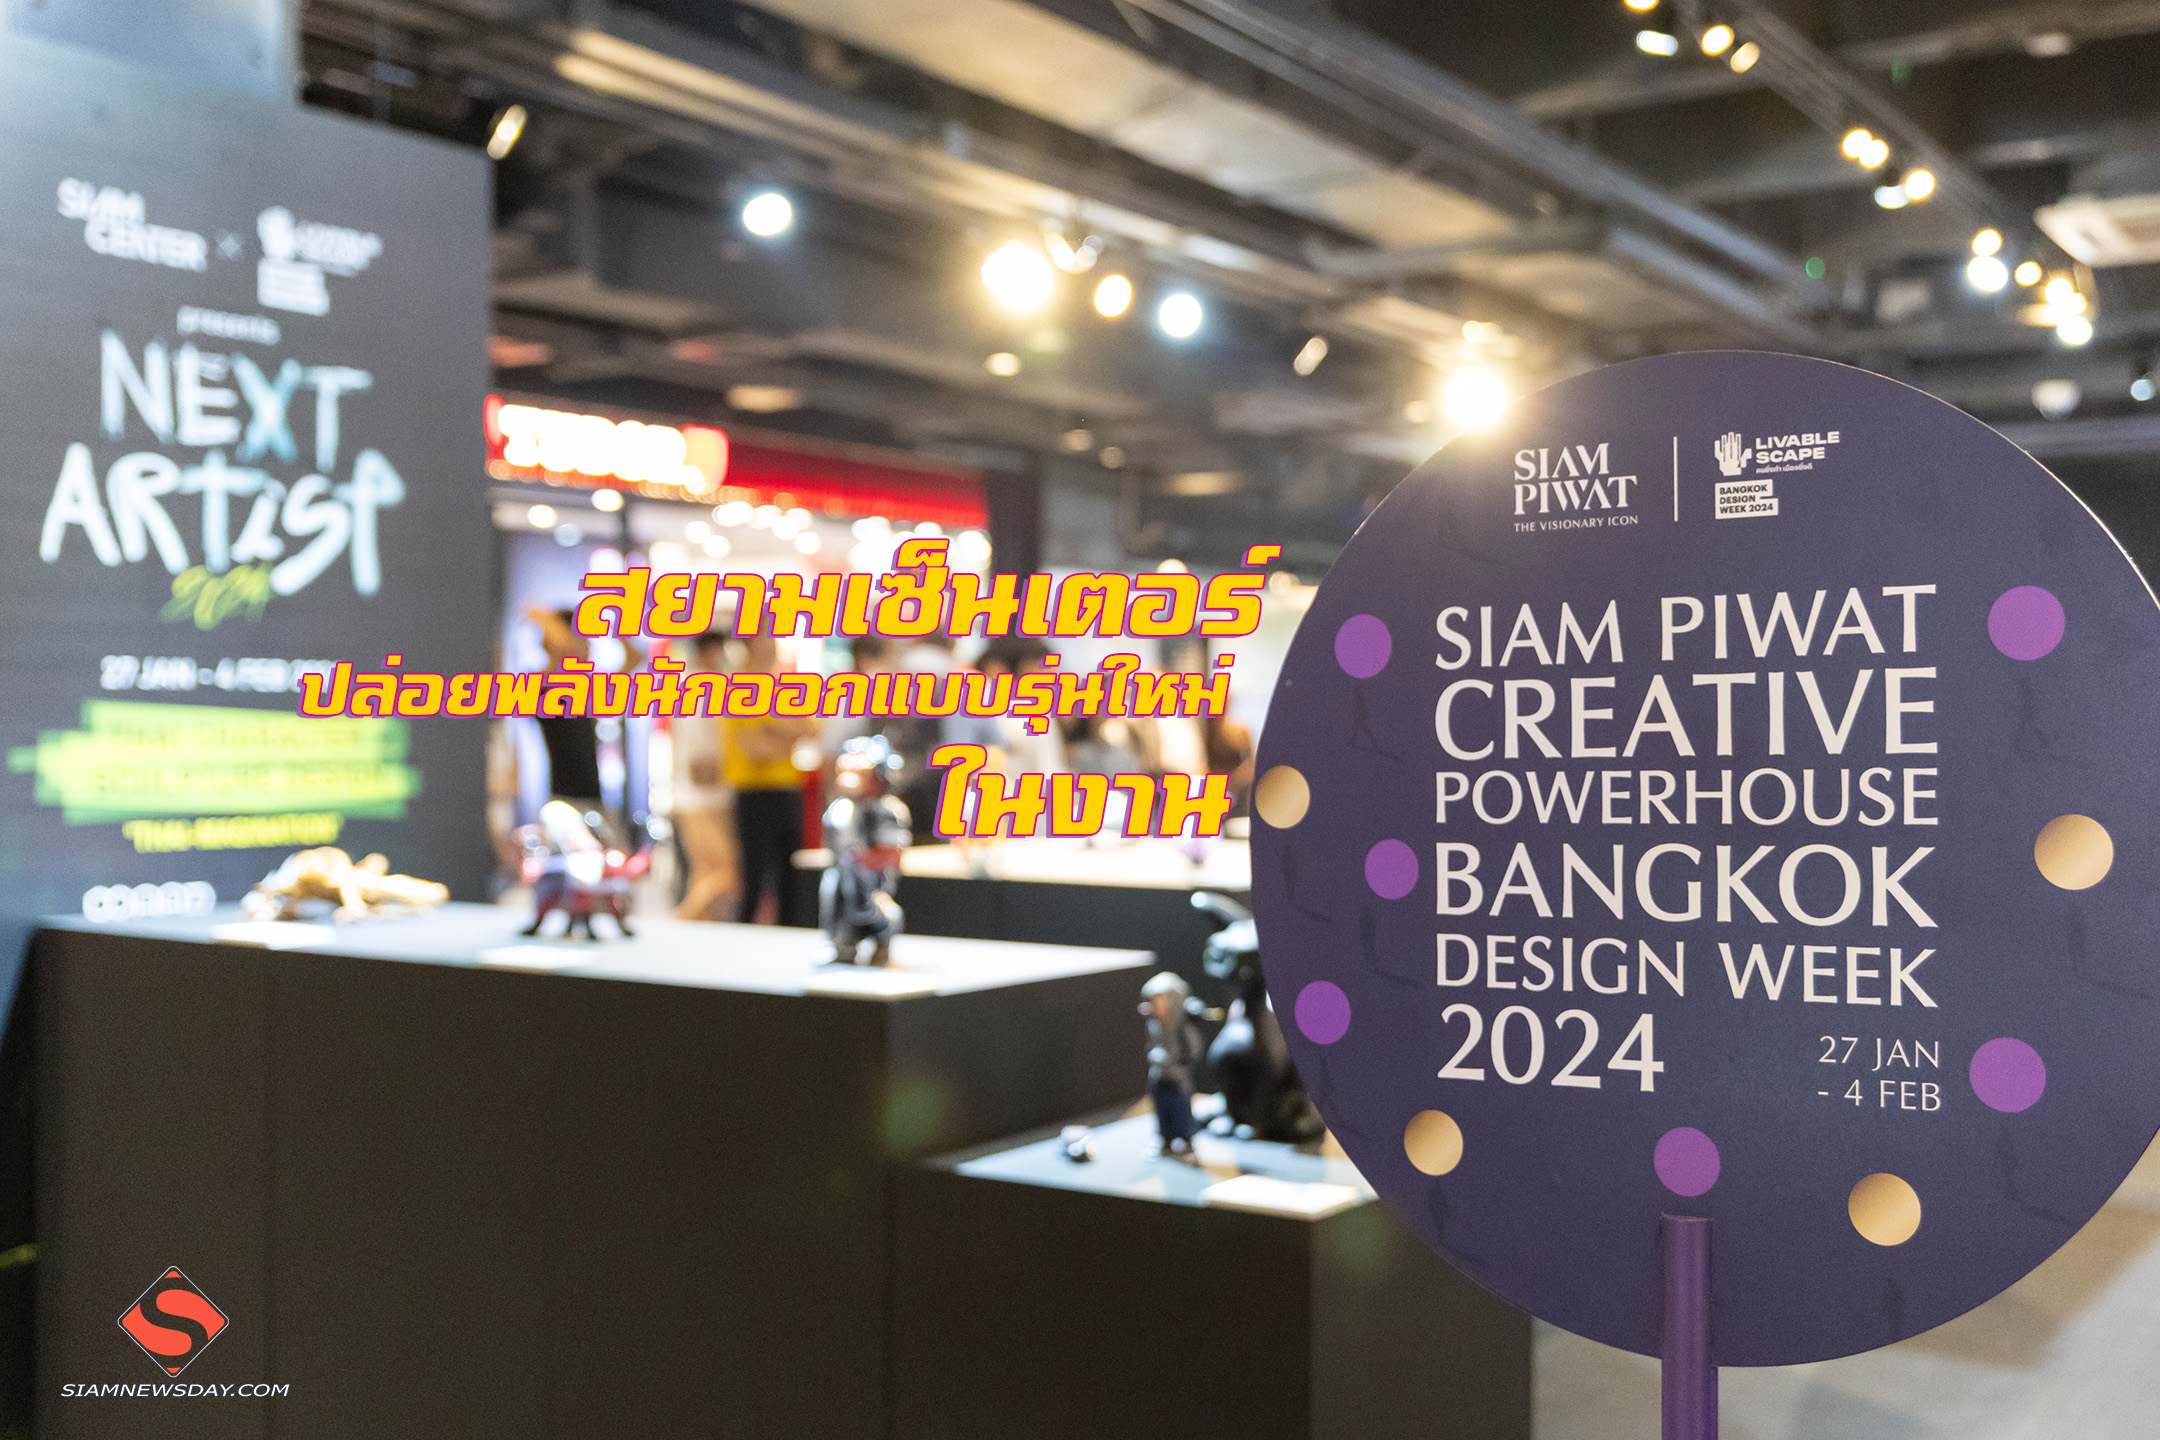 สยามเซ็นเตอร์ ปล่อยพลังนักออกแบบรุ่นใหม่ ในงาน Bangkok Design Week 2024